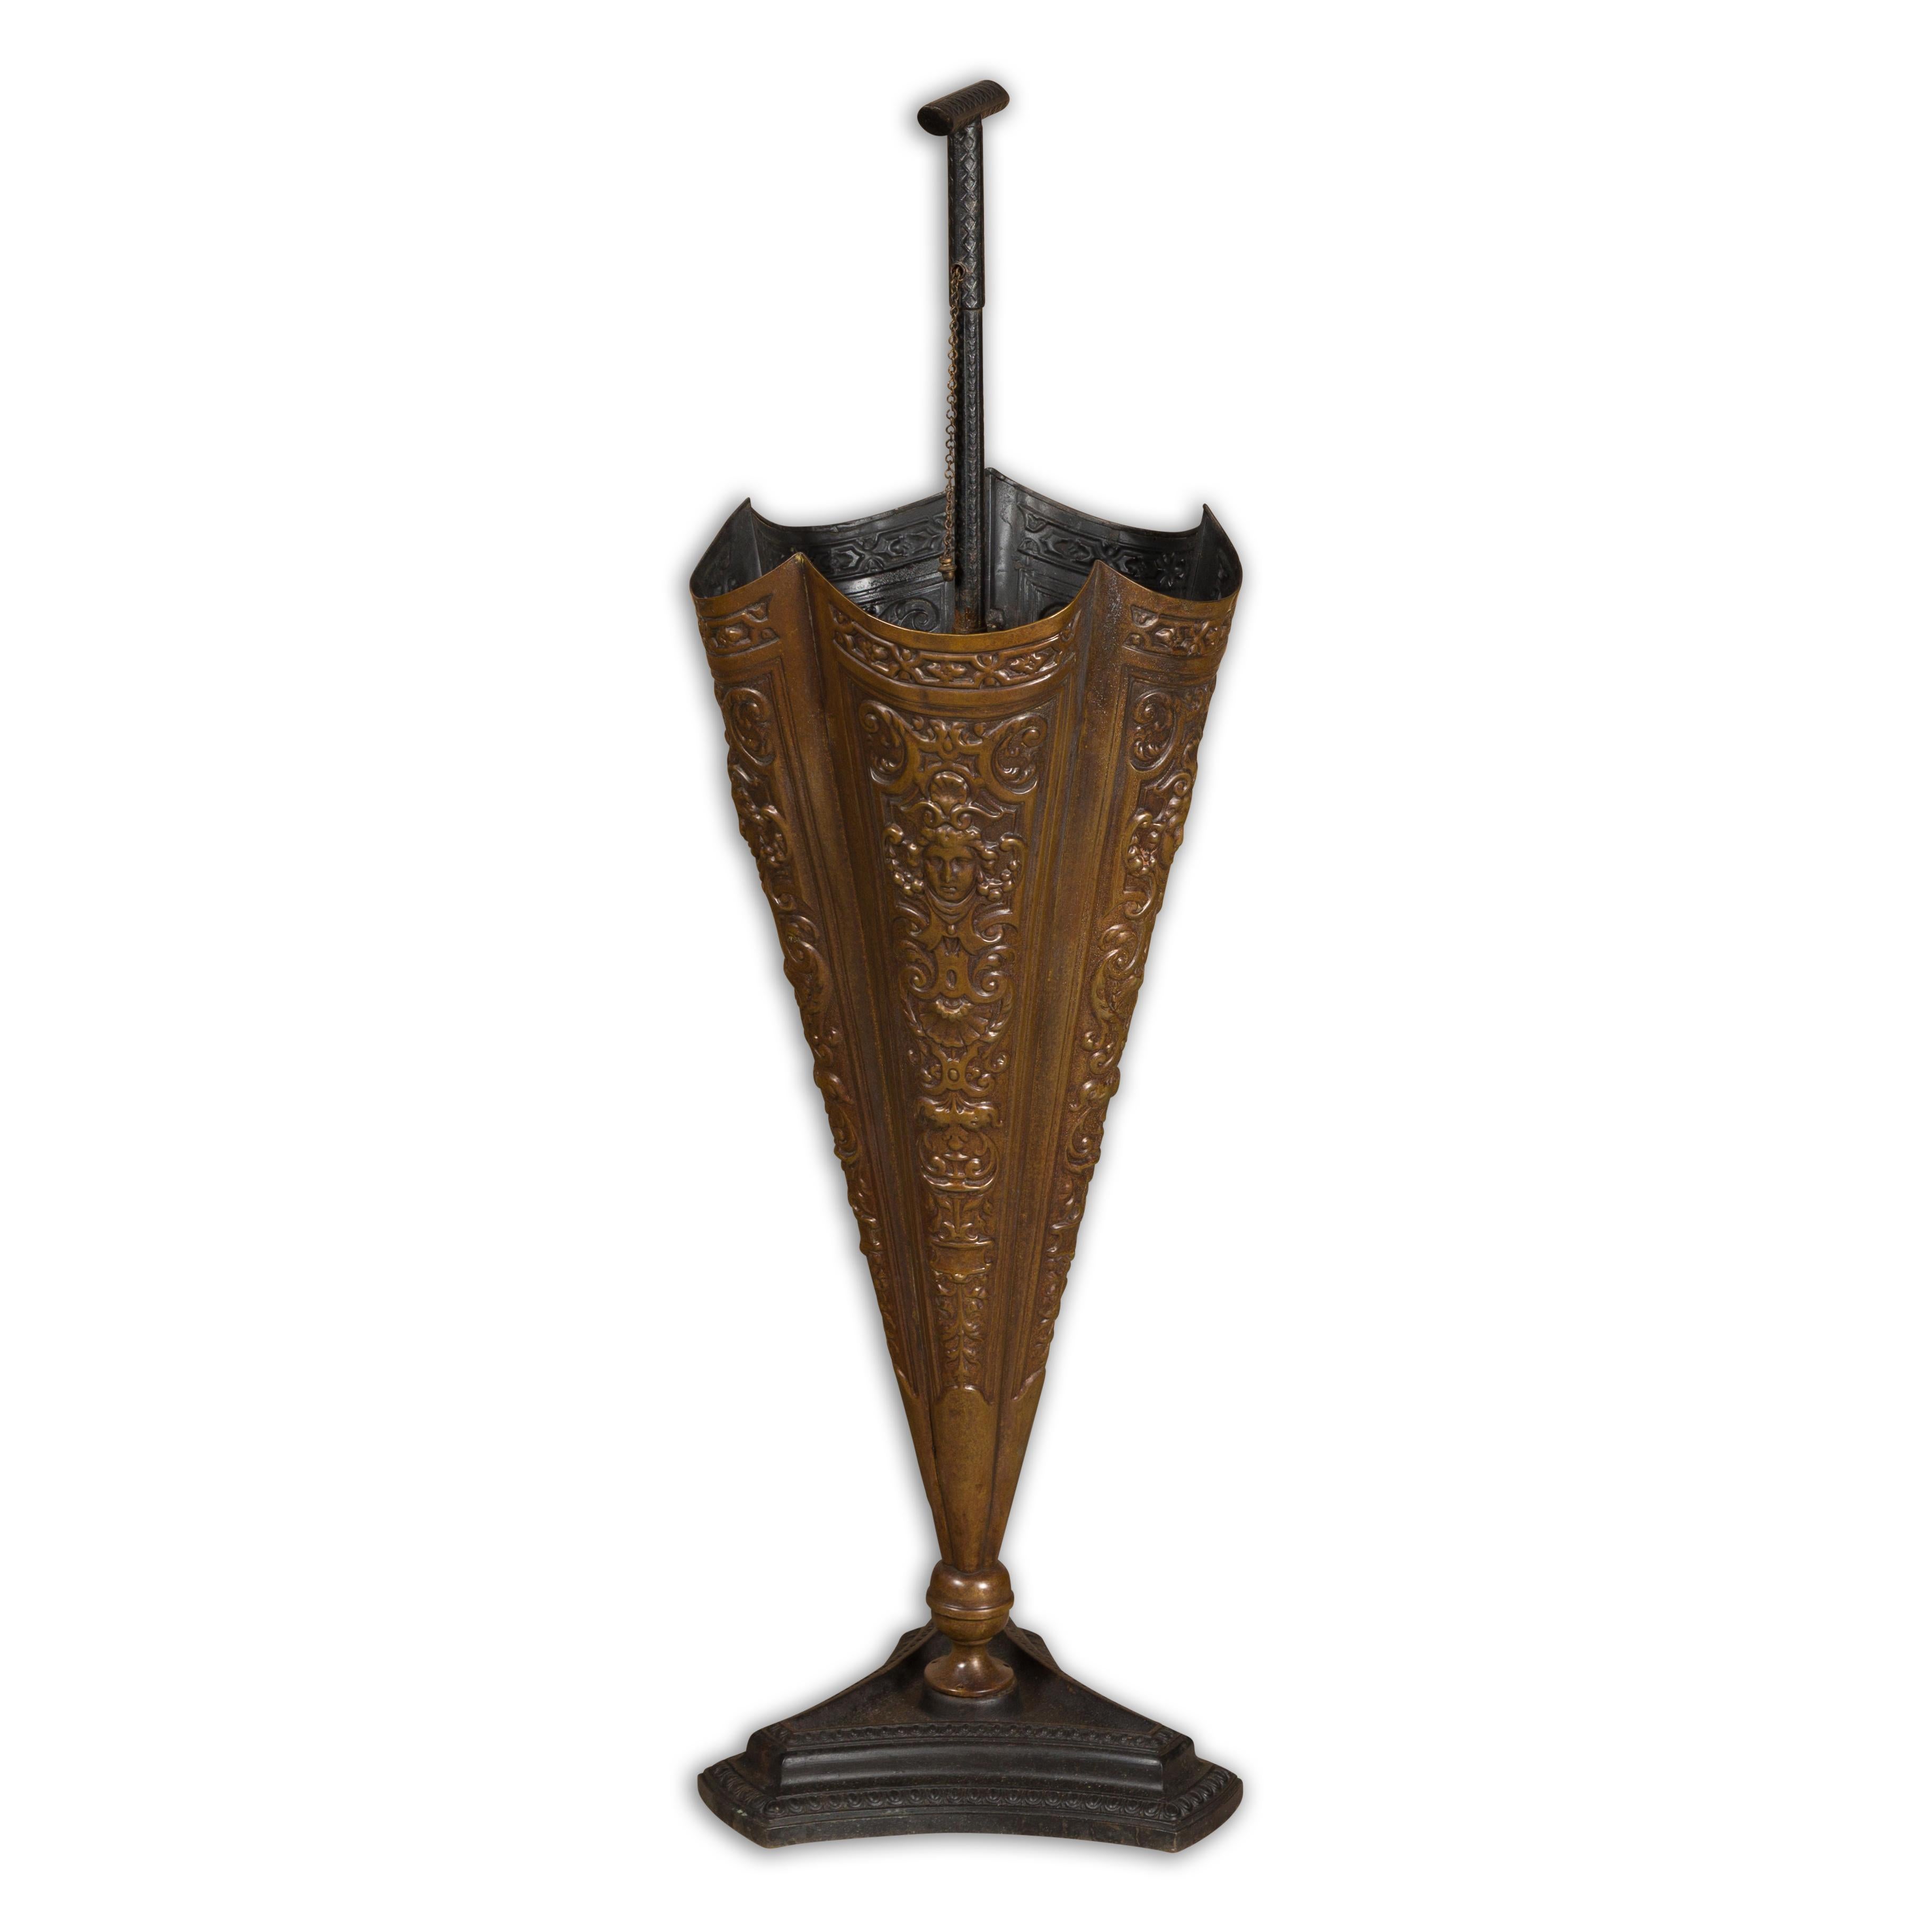 Porte-parapluie anglais en laiton, datant des années 1920-1930, en forme de parapluie avec des motifs en relief et une base tripartite. Entrez dans le monde du charme fantaisiste avec ce porte-parapluie anglais en laiton datant de l'époque vibrante